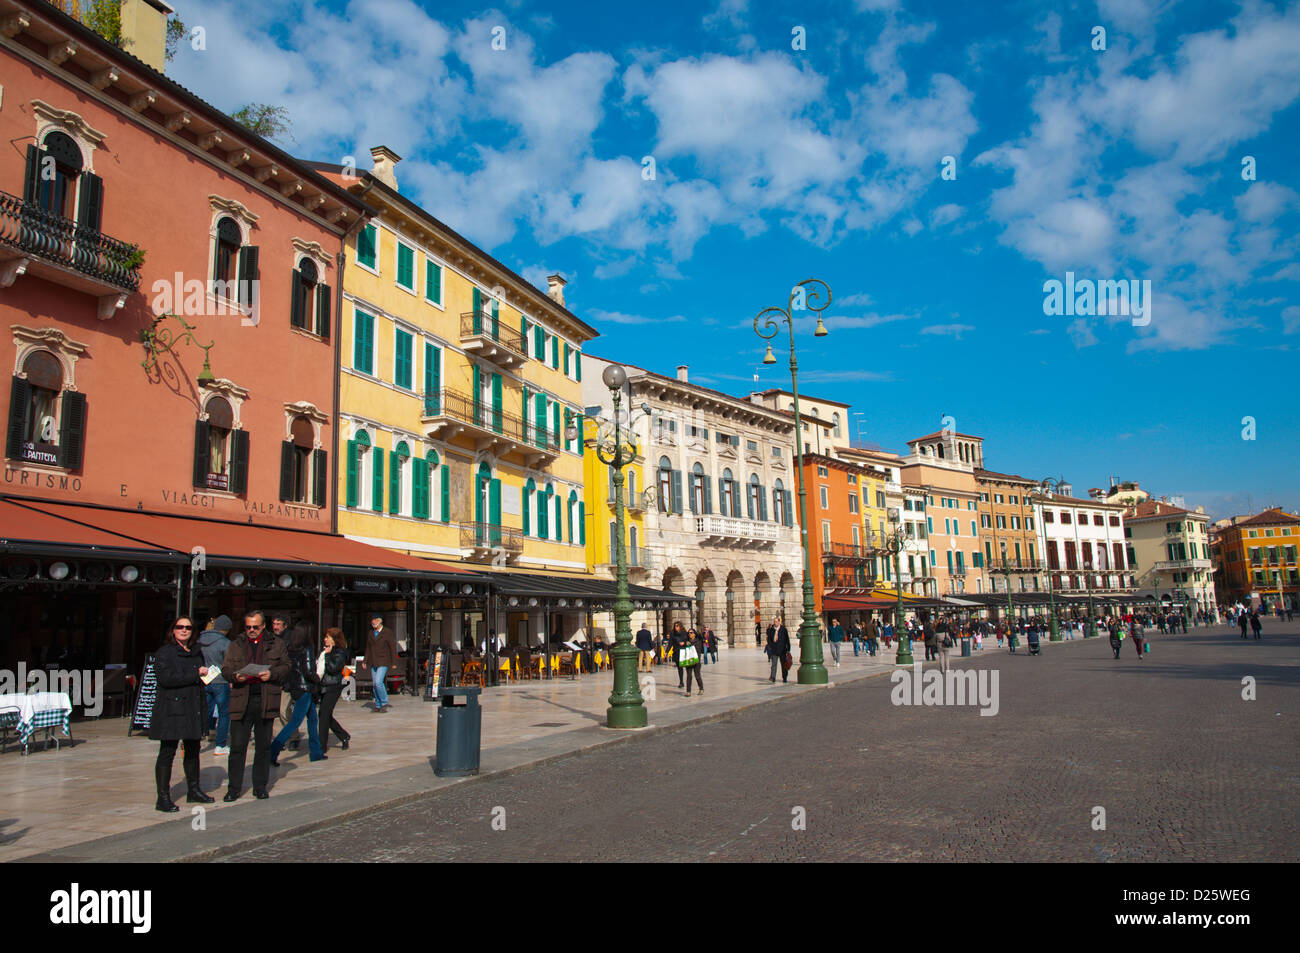 Piazza Bra nel centro storico della città di Verona Veneto Italia del nord Europa Foto Stock